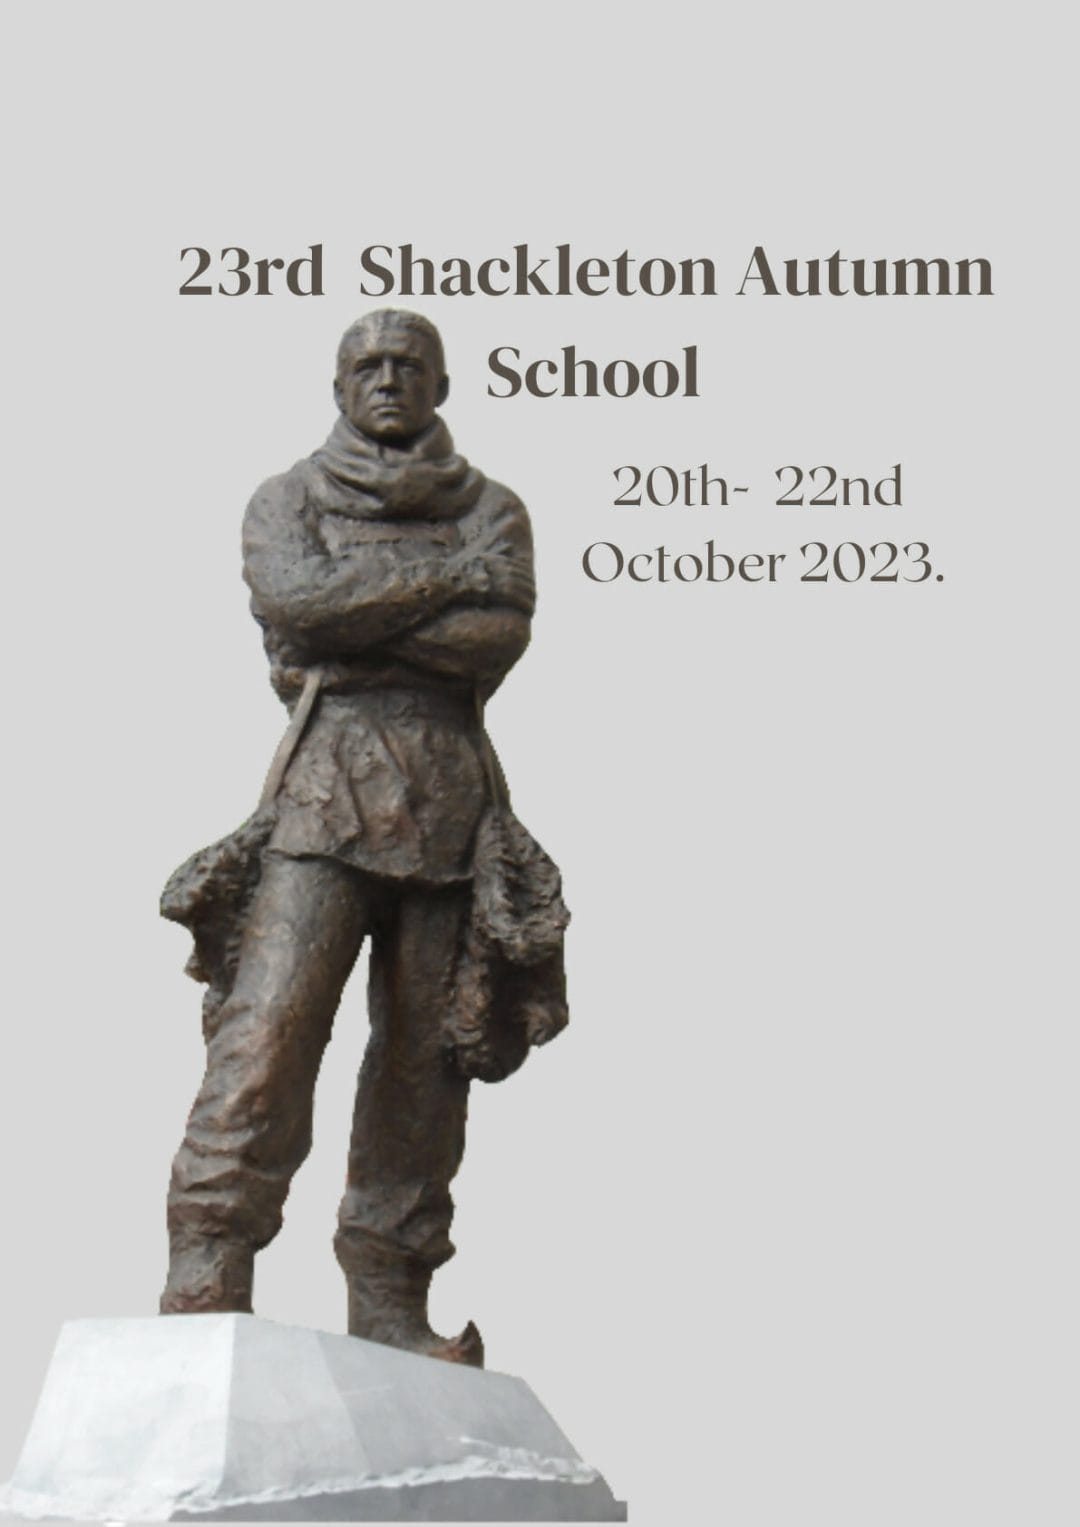 https://shackletonmuseum.com/ernest-shackleton/autumn-school/23rd-annual-shackleton-autumn-school/